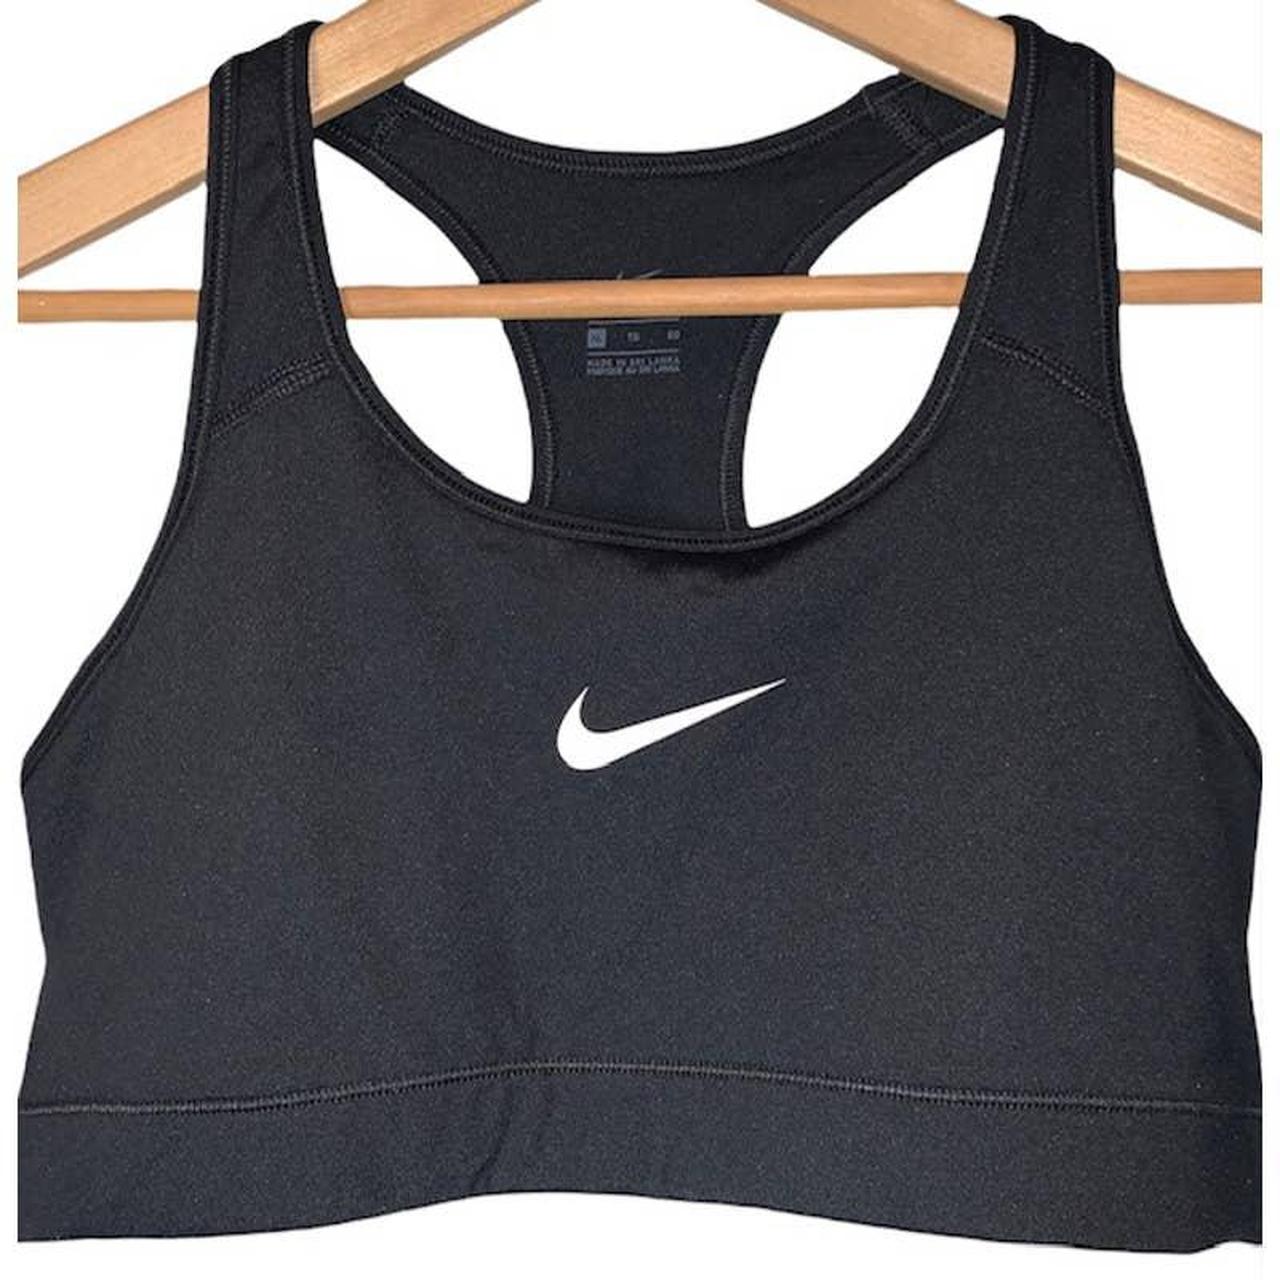 Nike Dri Fit black sports training bra with classic... - Depop